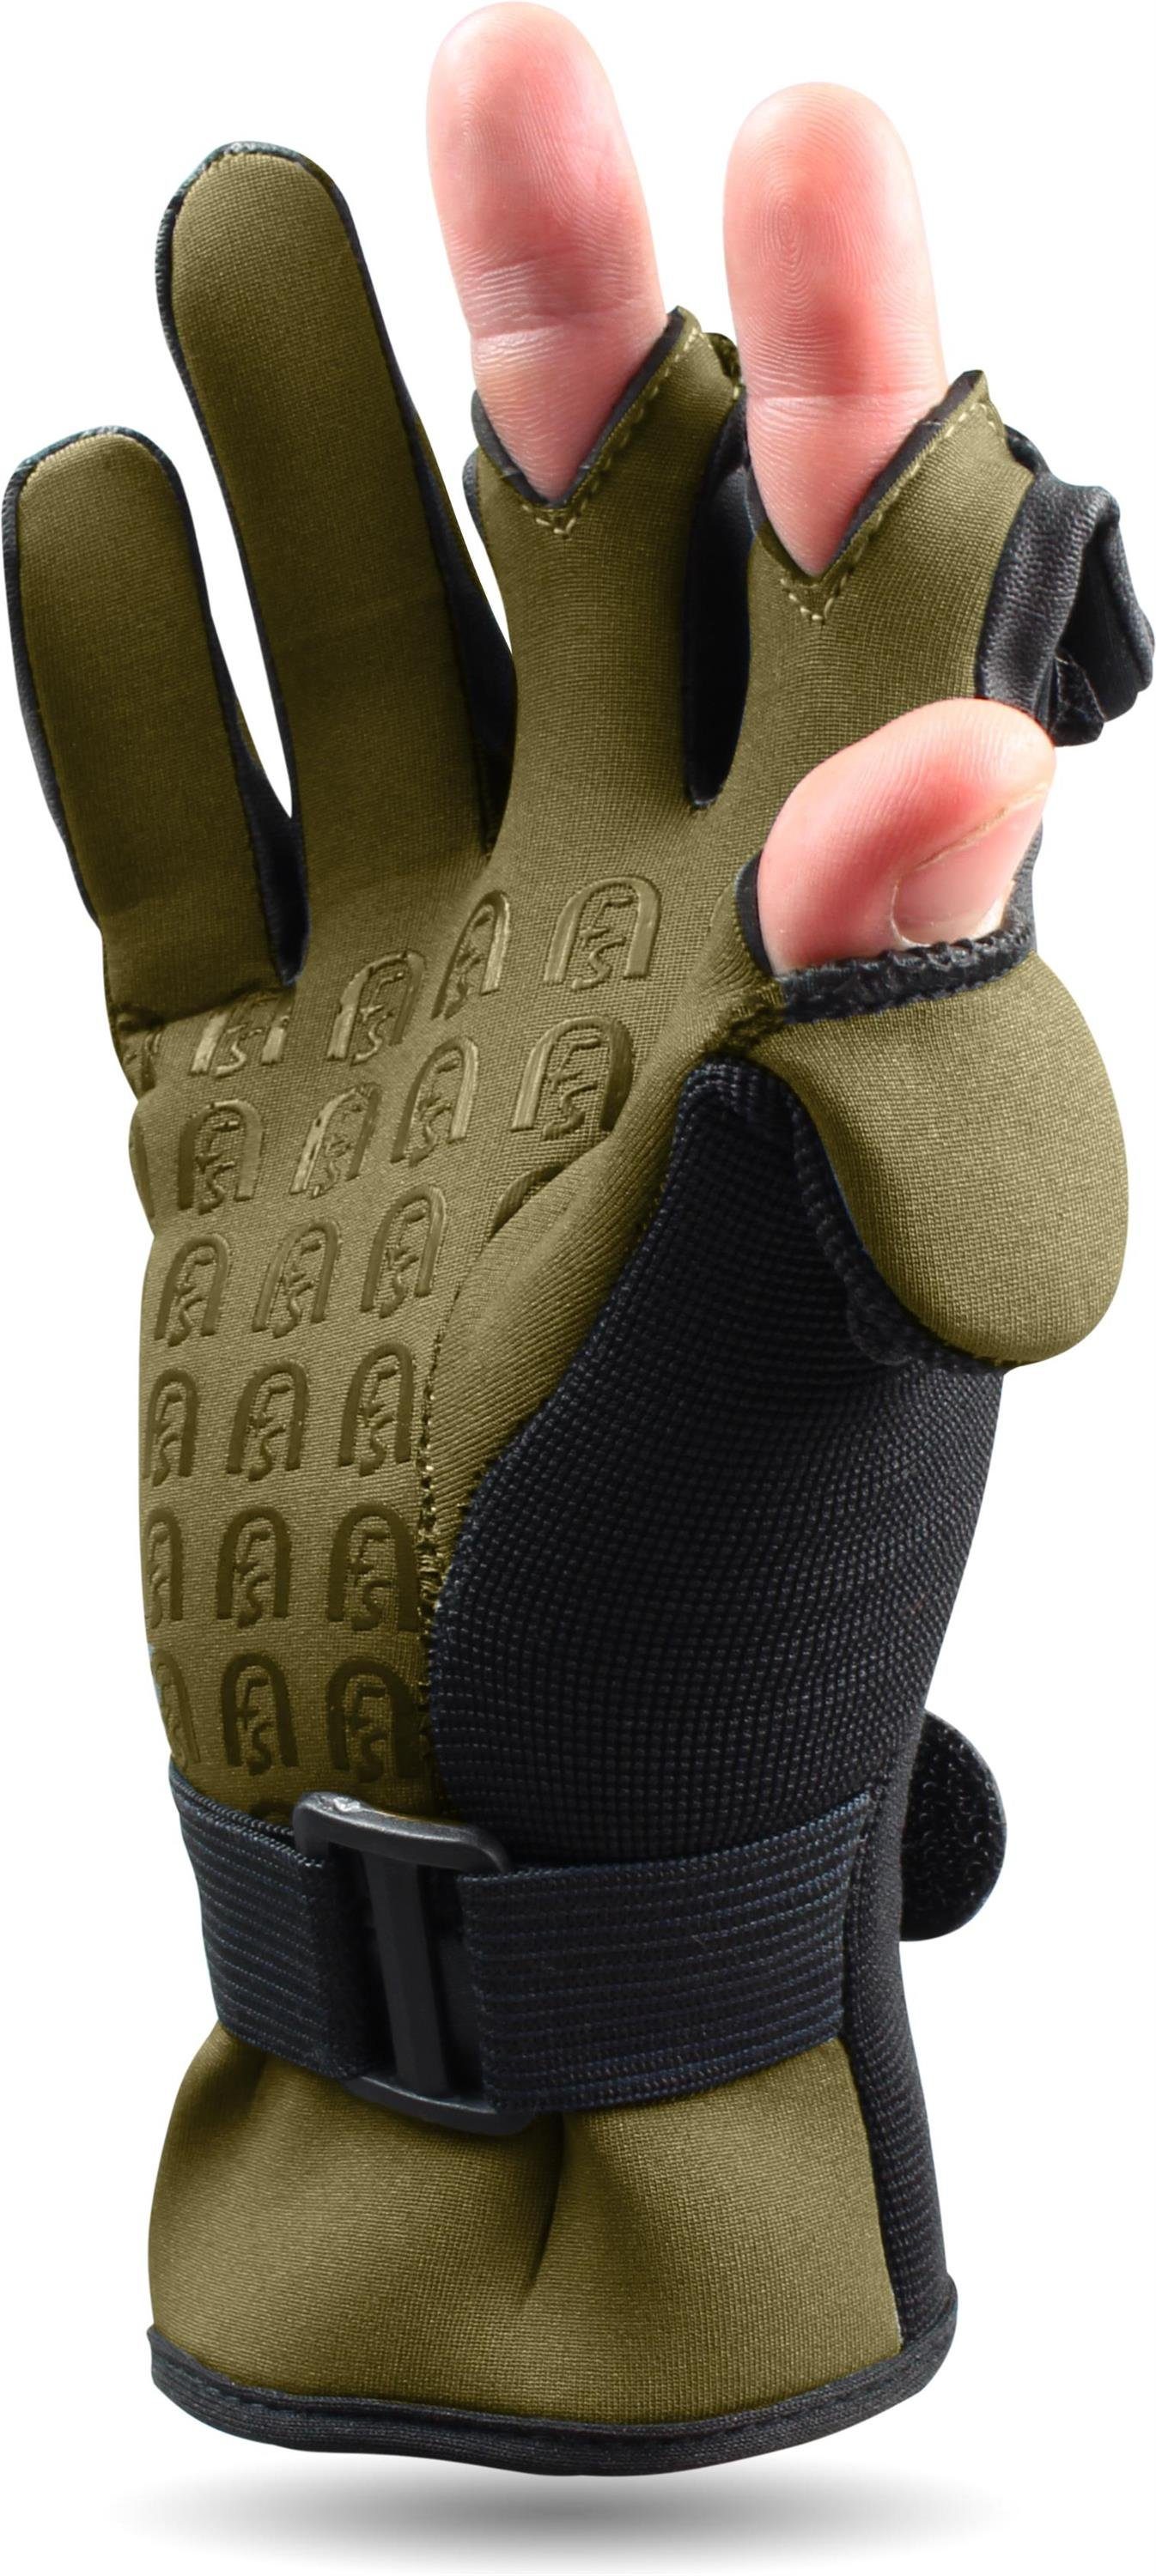 normani Angelhandschuhe Fingerkuppen umklappbaren Catcher mit Silikon-Innenseite Neopren-Anglerhandschuhe und Neoprenhandschuhe Angelhandschuhe Schwarz/Oliv